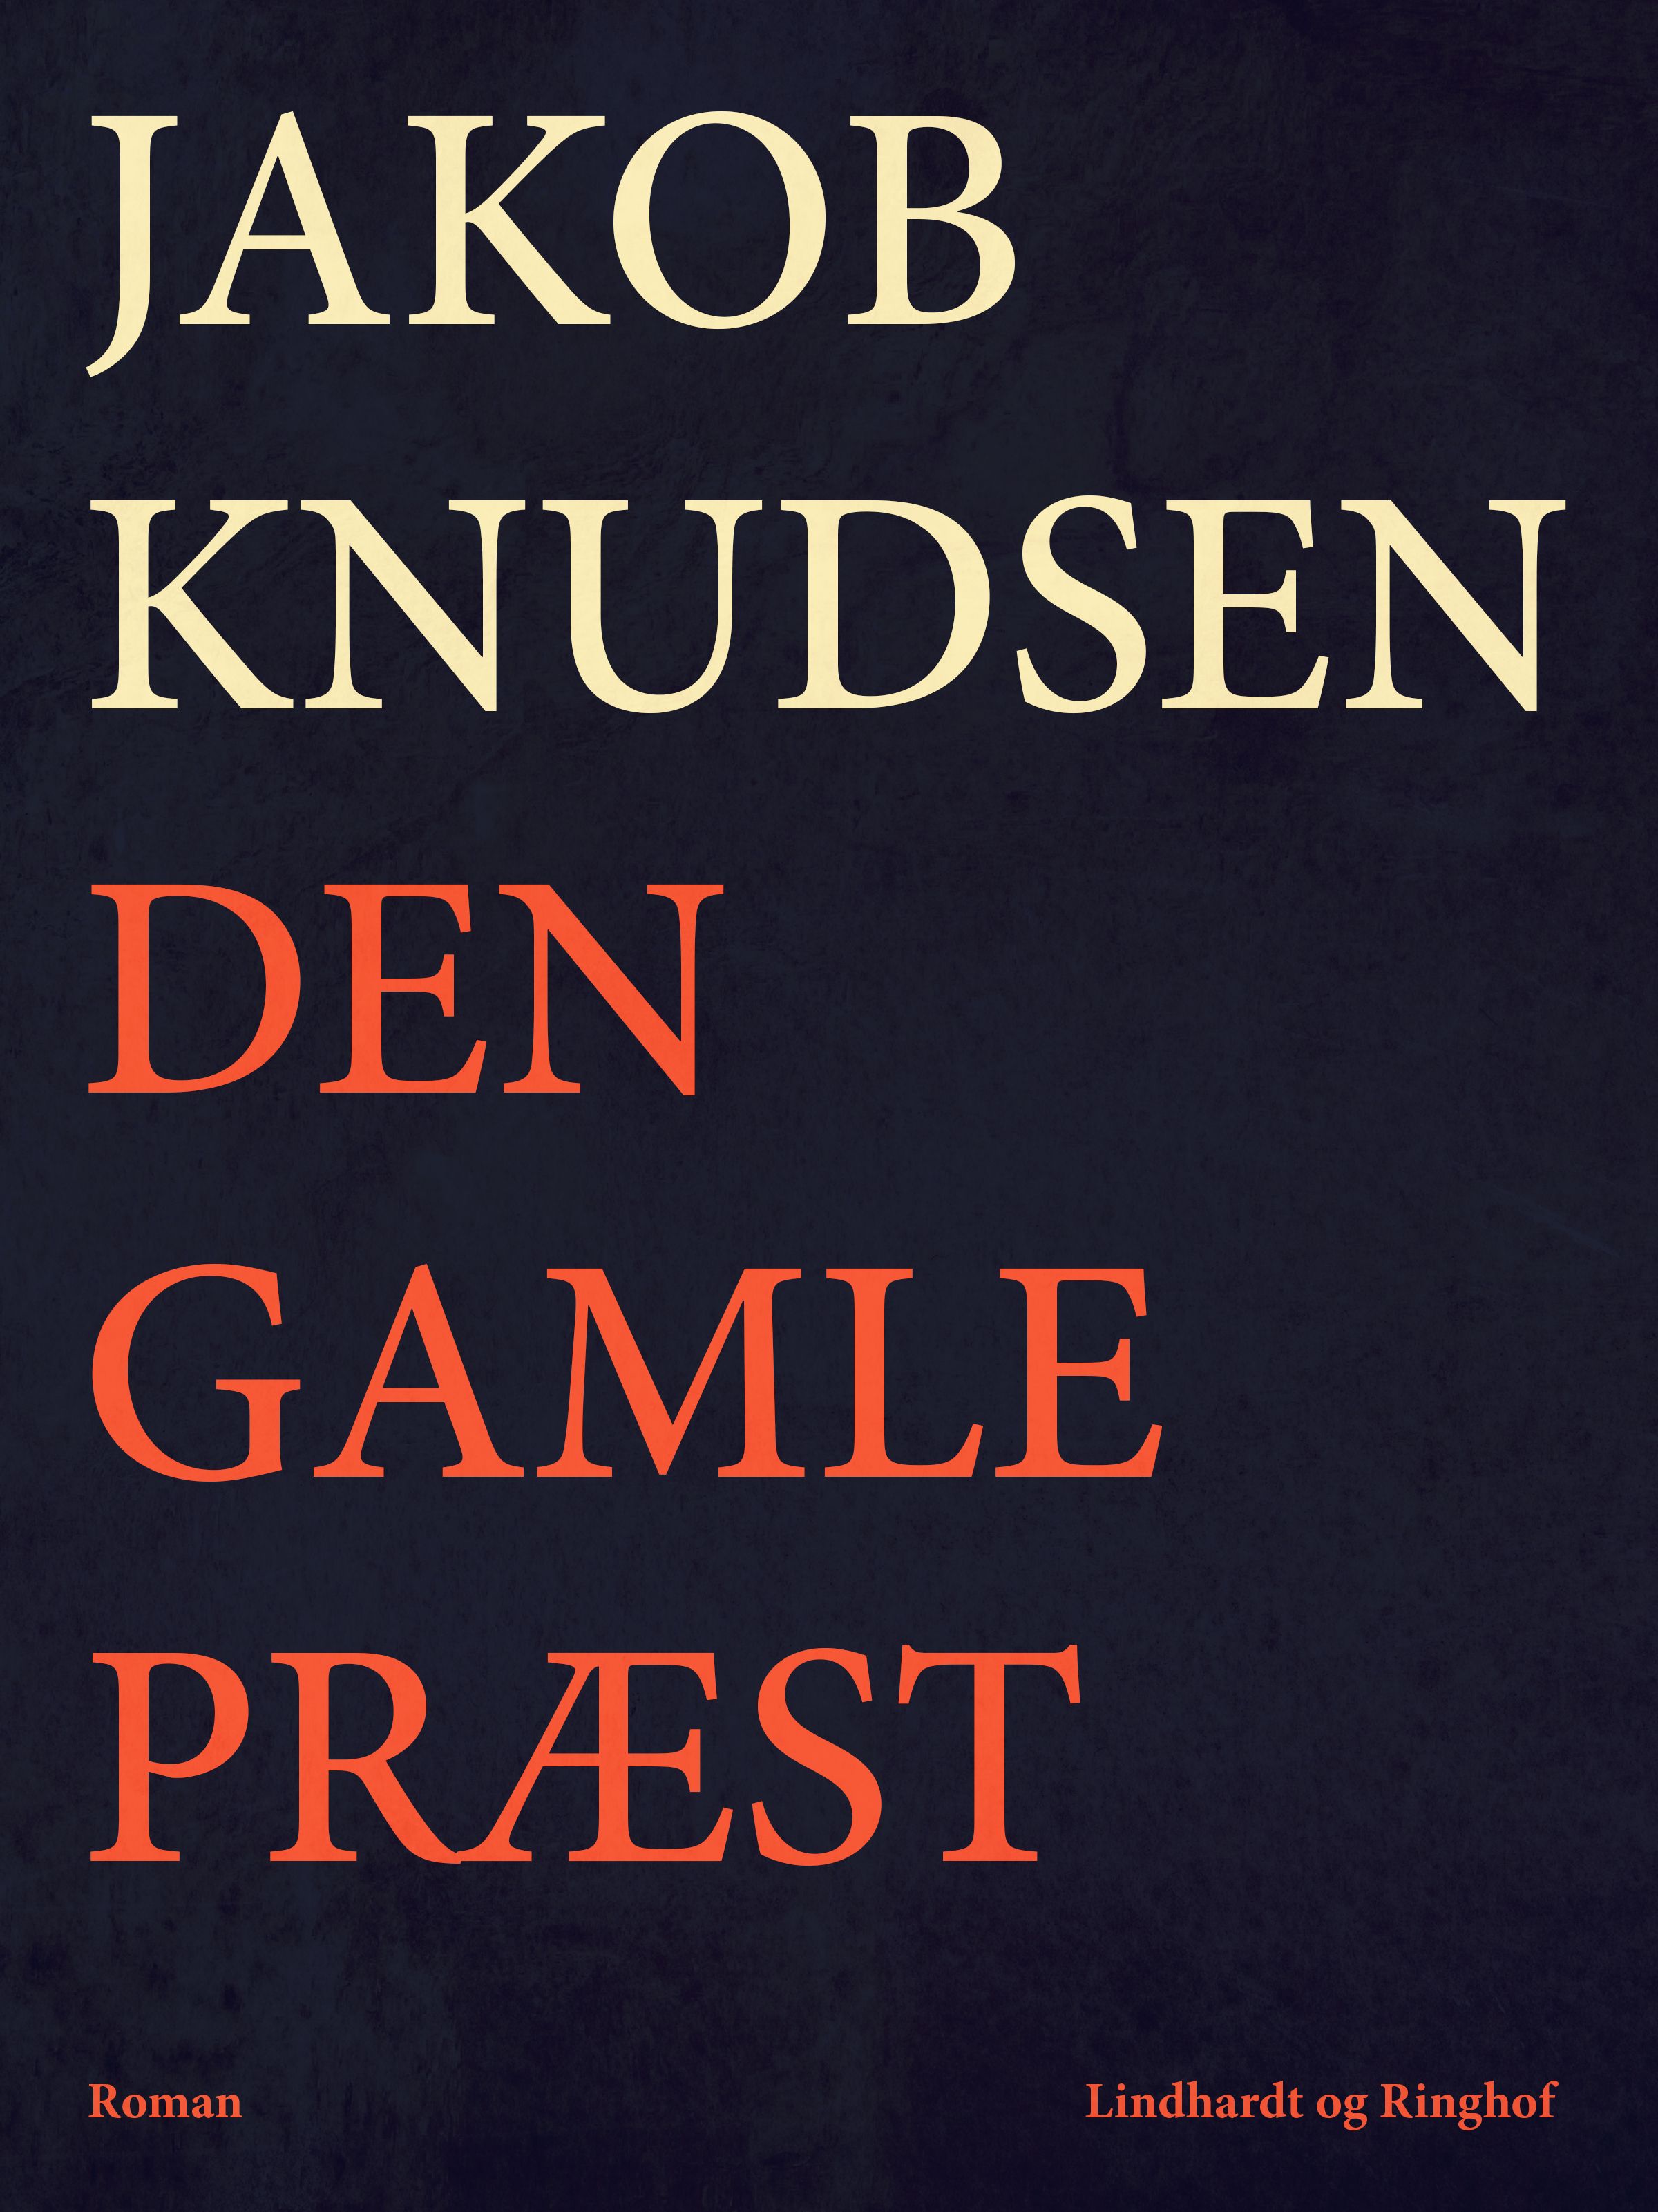 Den gamle præst, lydbog af Jakob Knudsen